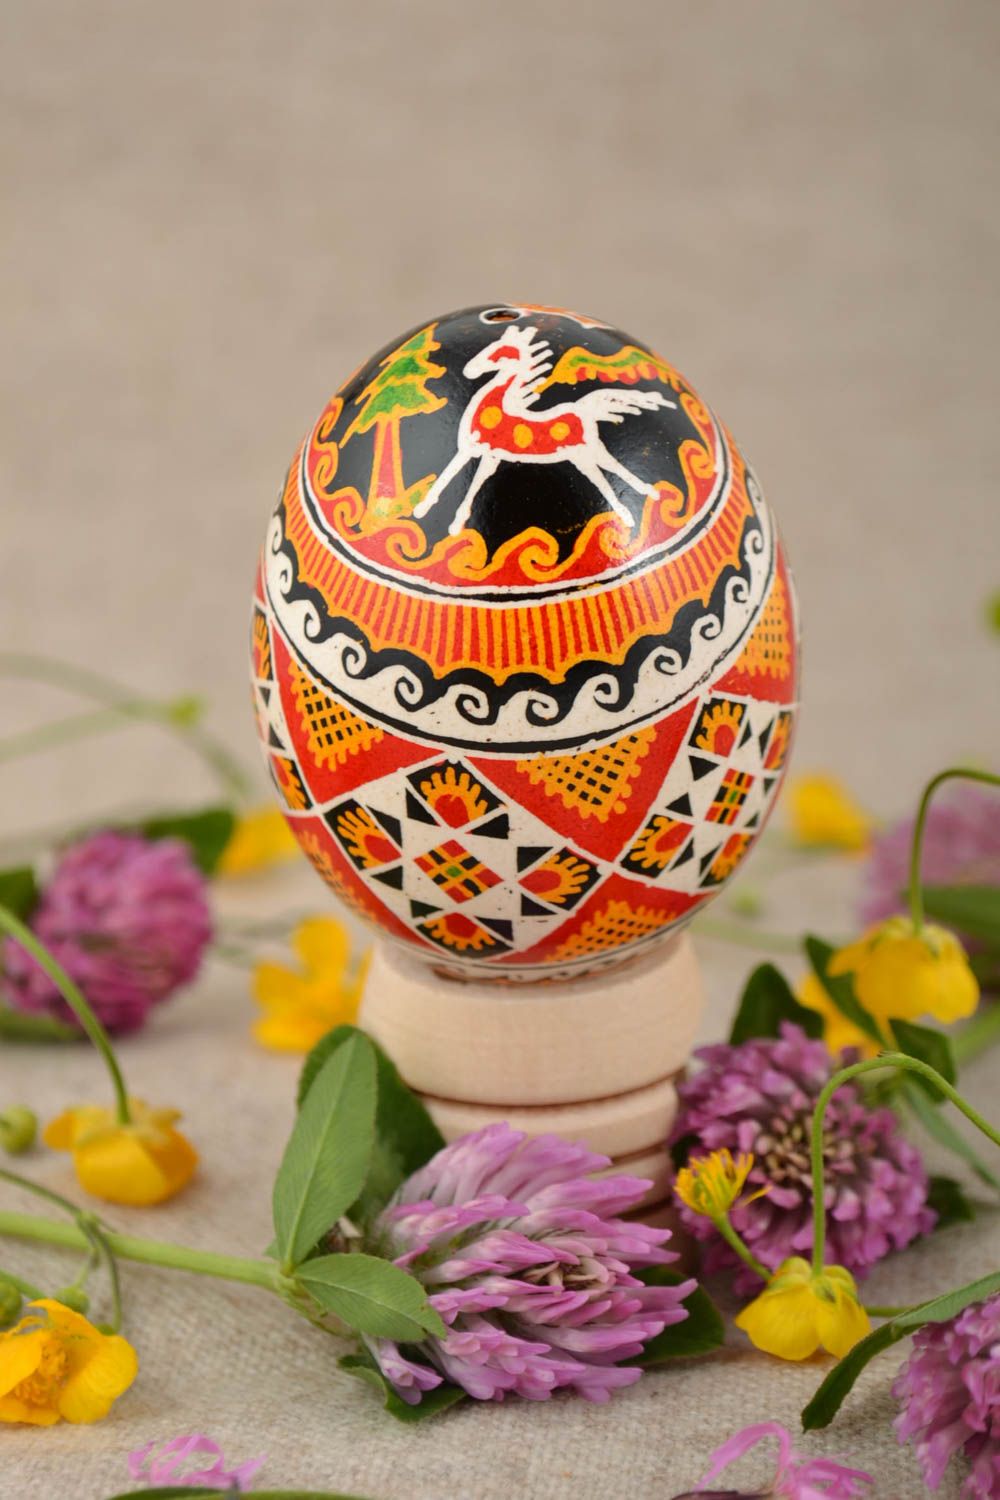 Пасхальное яйцо ручной работы с росписью акриловыми красками по народным мотивам фото 1